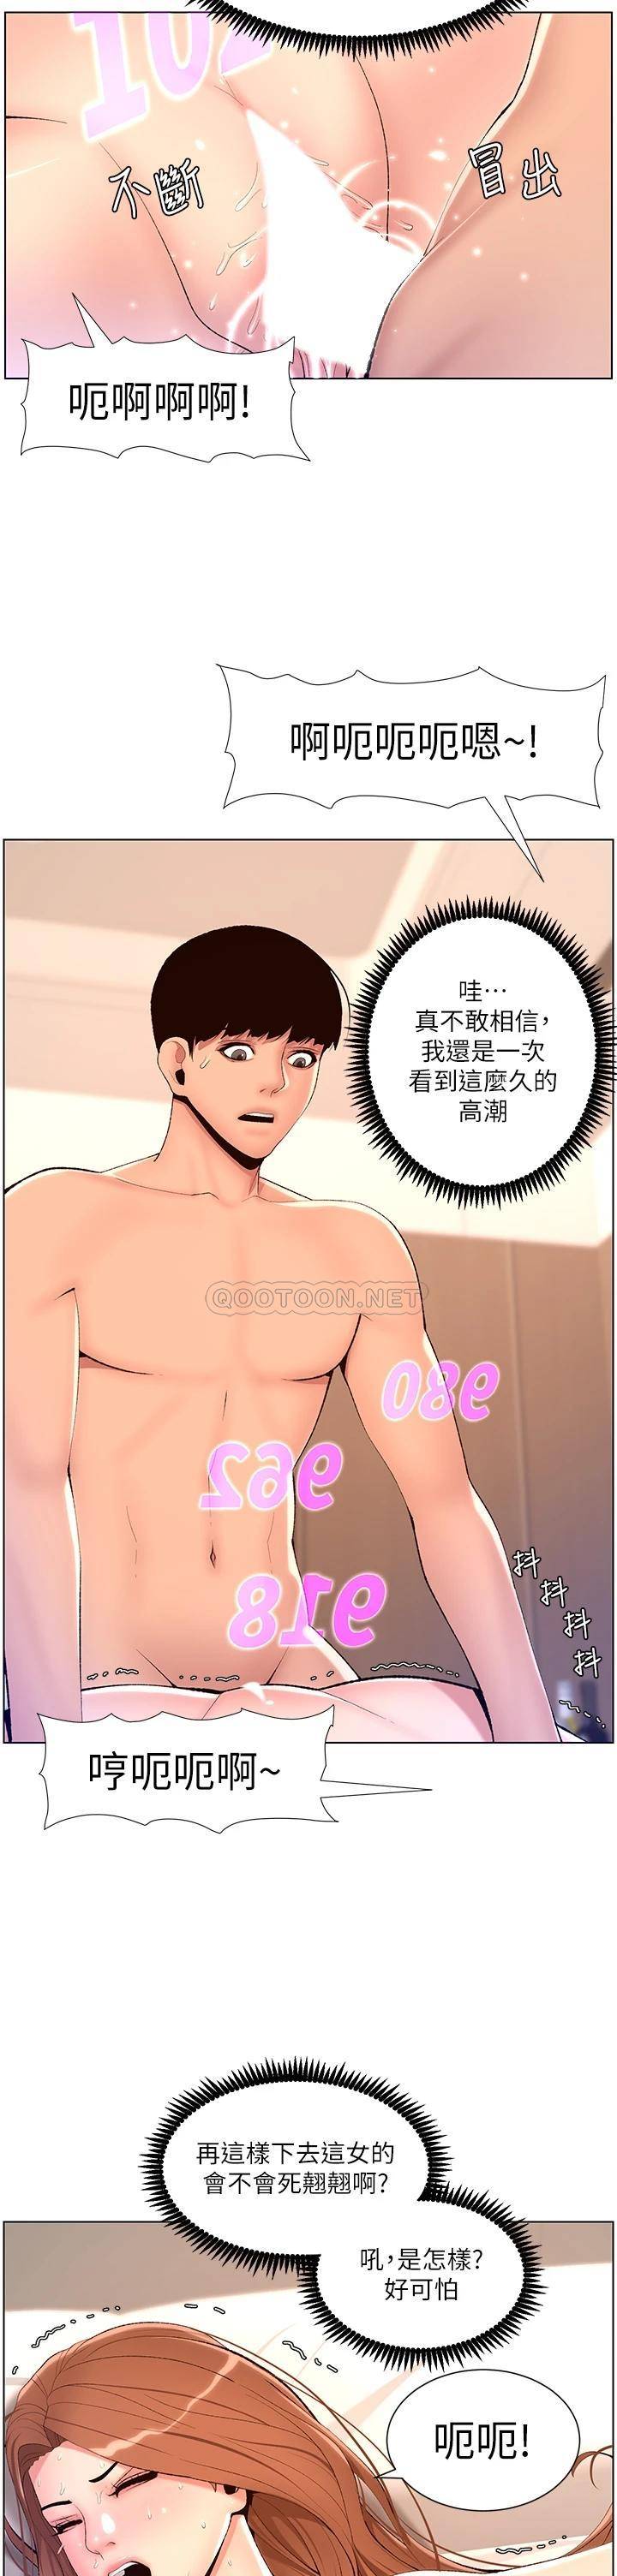 韩国污漫画 帝王App 第18话 把教练调教成肉便器 20